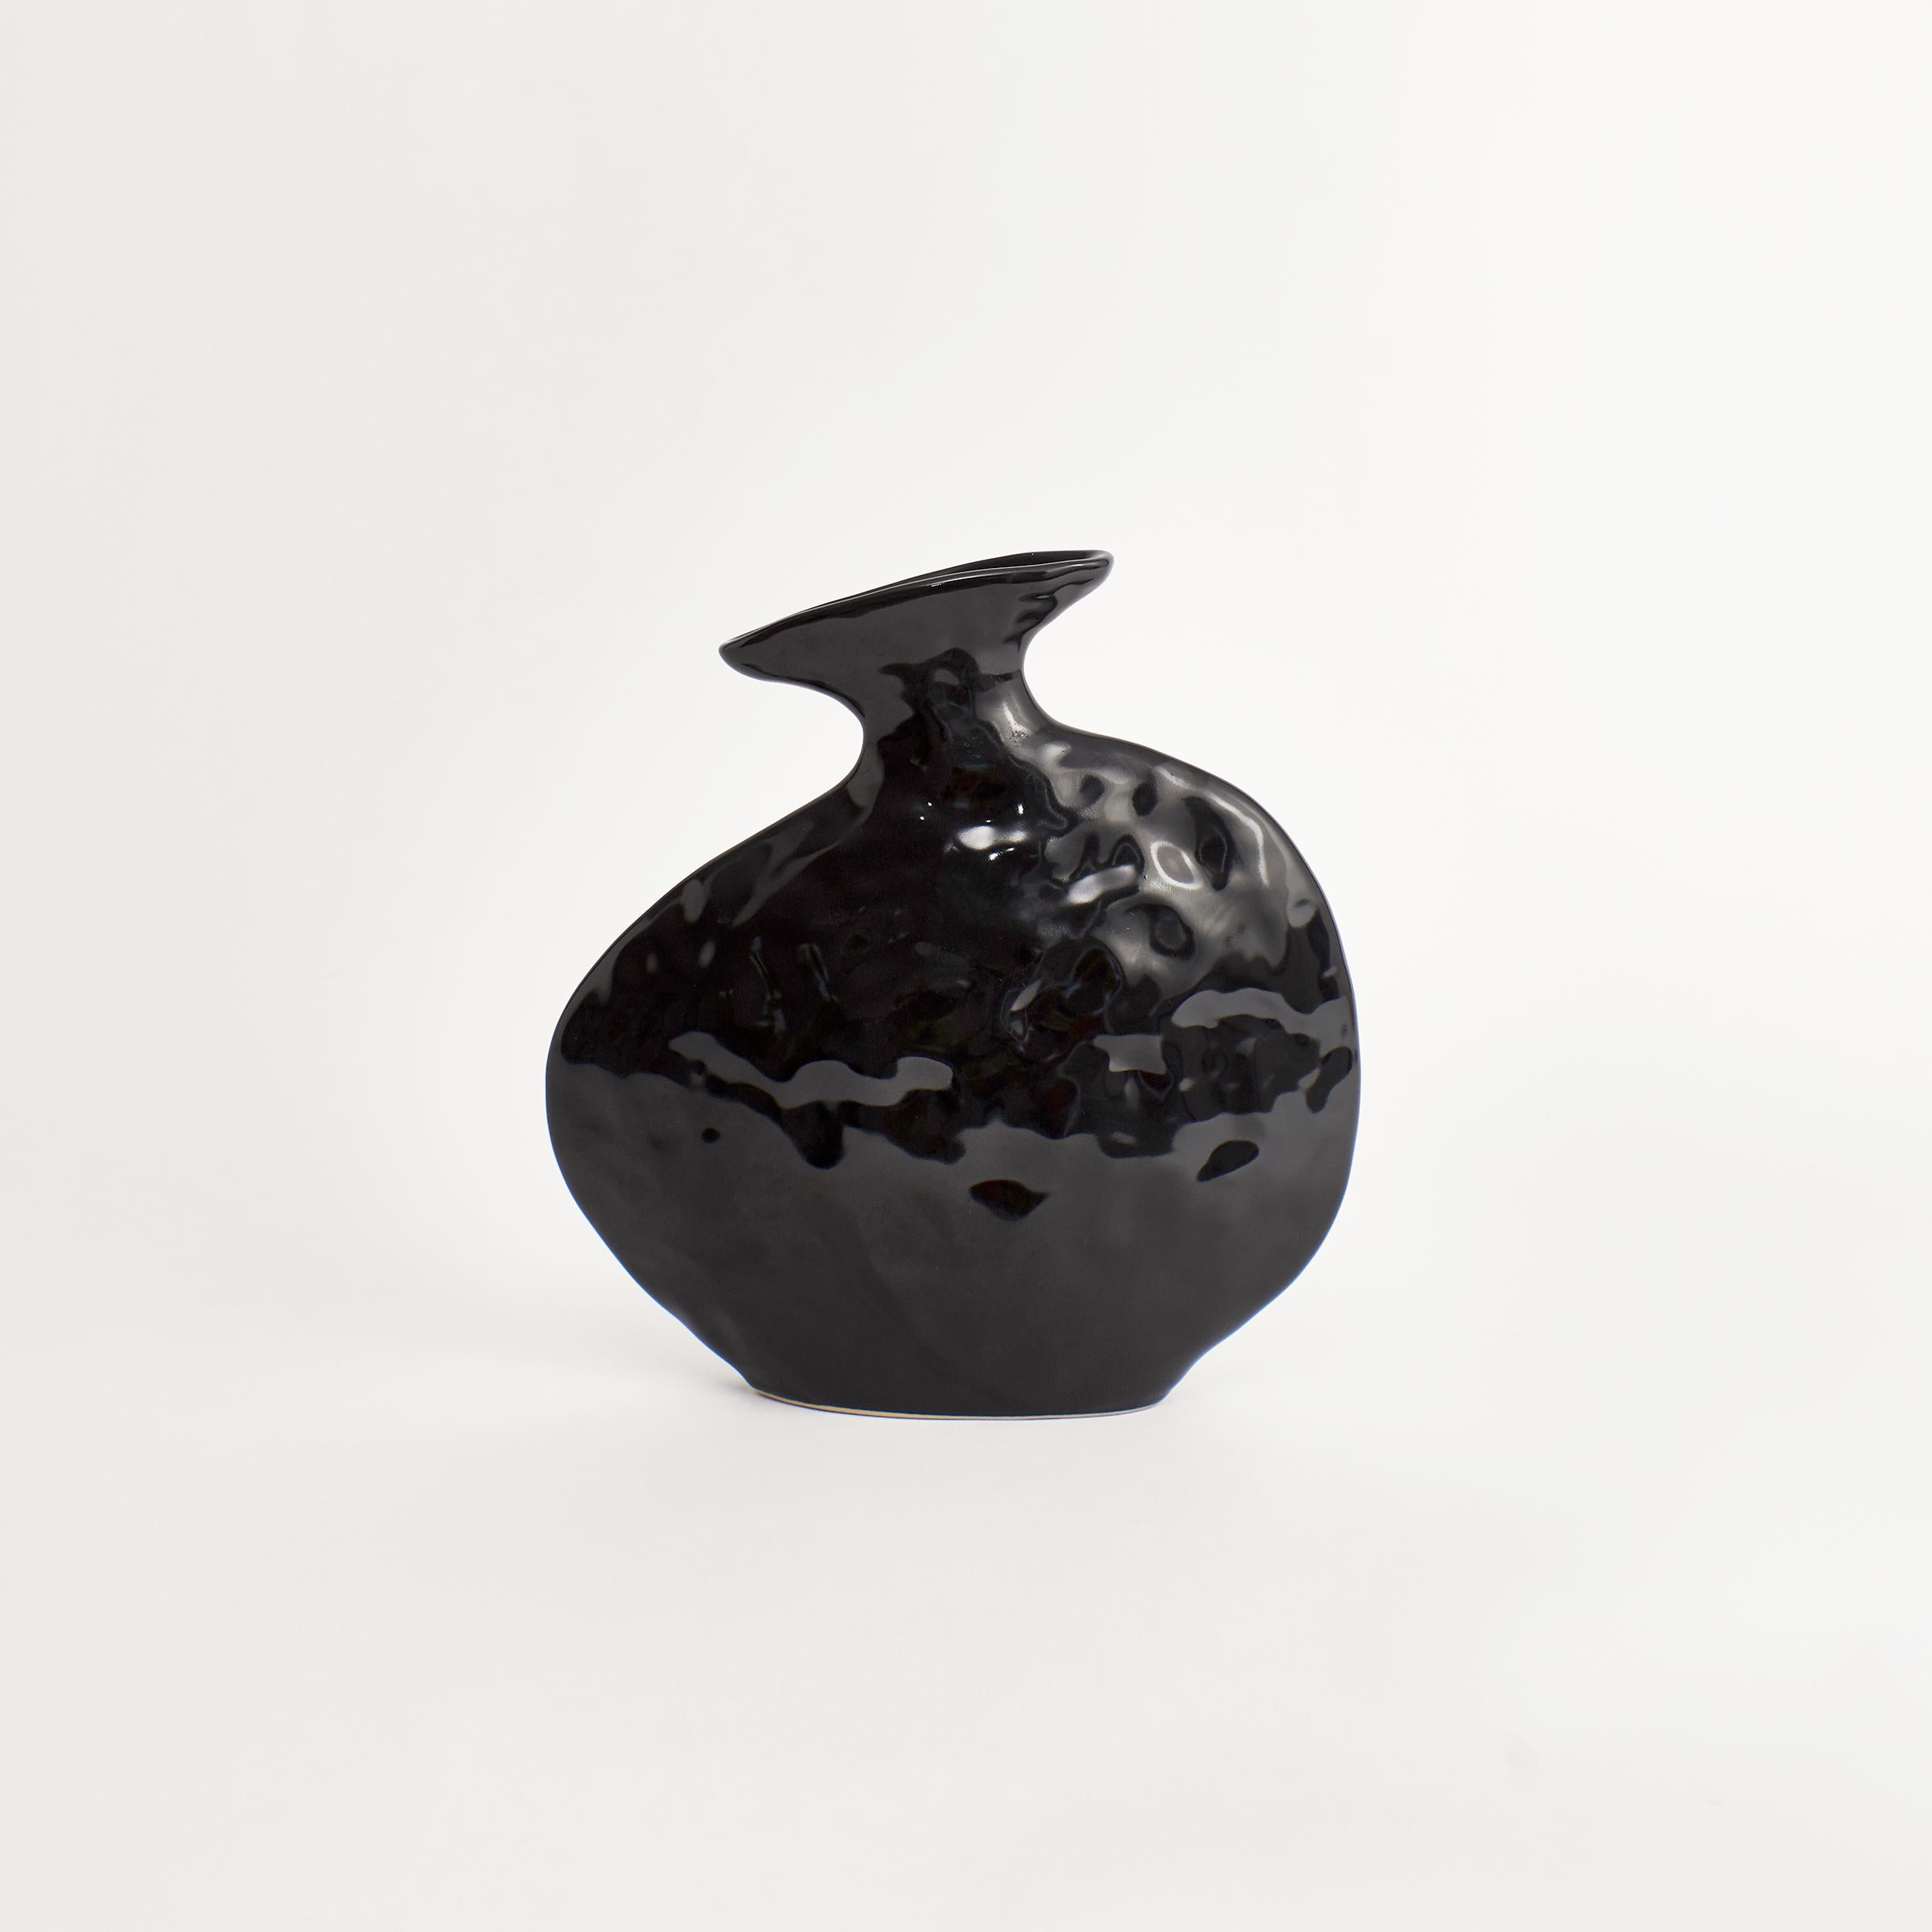 Flache Vase in Shiny Black.
Entworfen von Project 213A im Jahr 2021.
Handgefertigtes Steingut.


Die Schöpfung verlangt nach Zerstörung, sie nimmt das Alte und Typische, um das Neue und Besondere zu schaffen. Die flache Vase verkörpert durch ihre